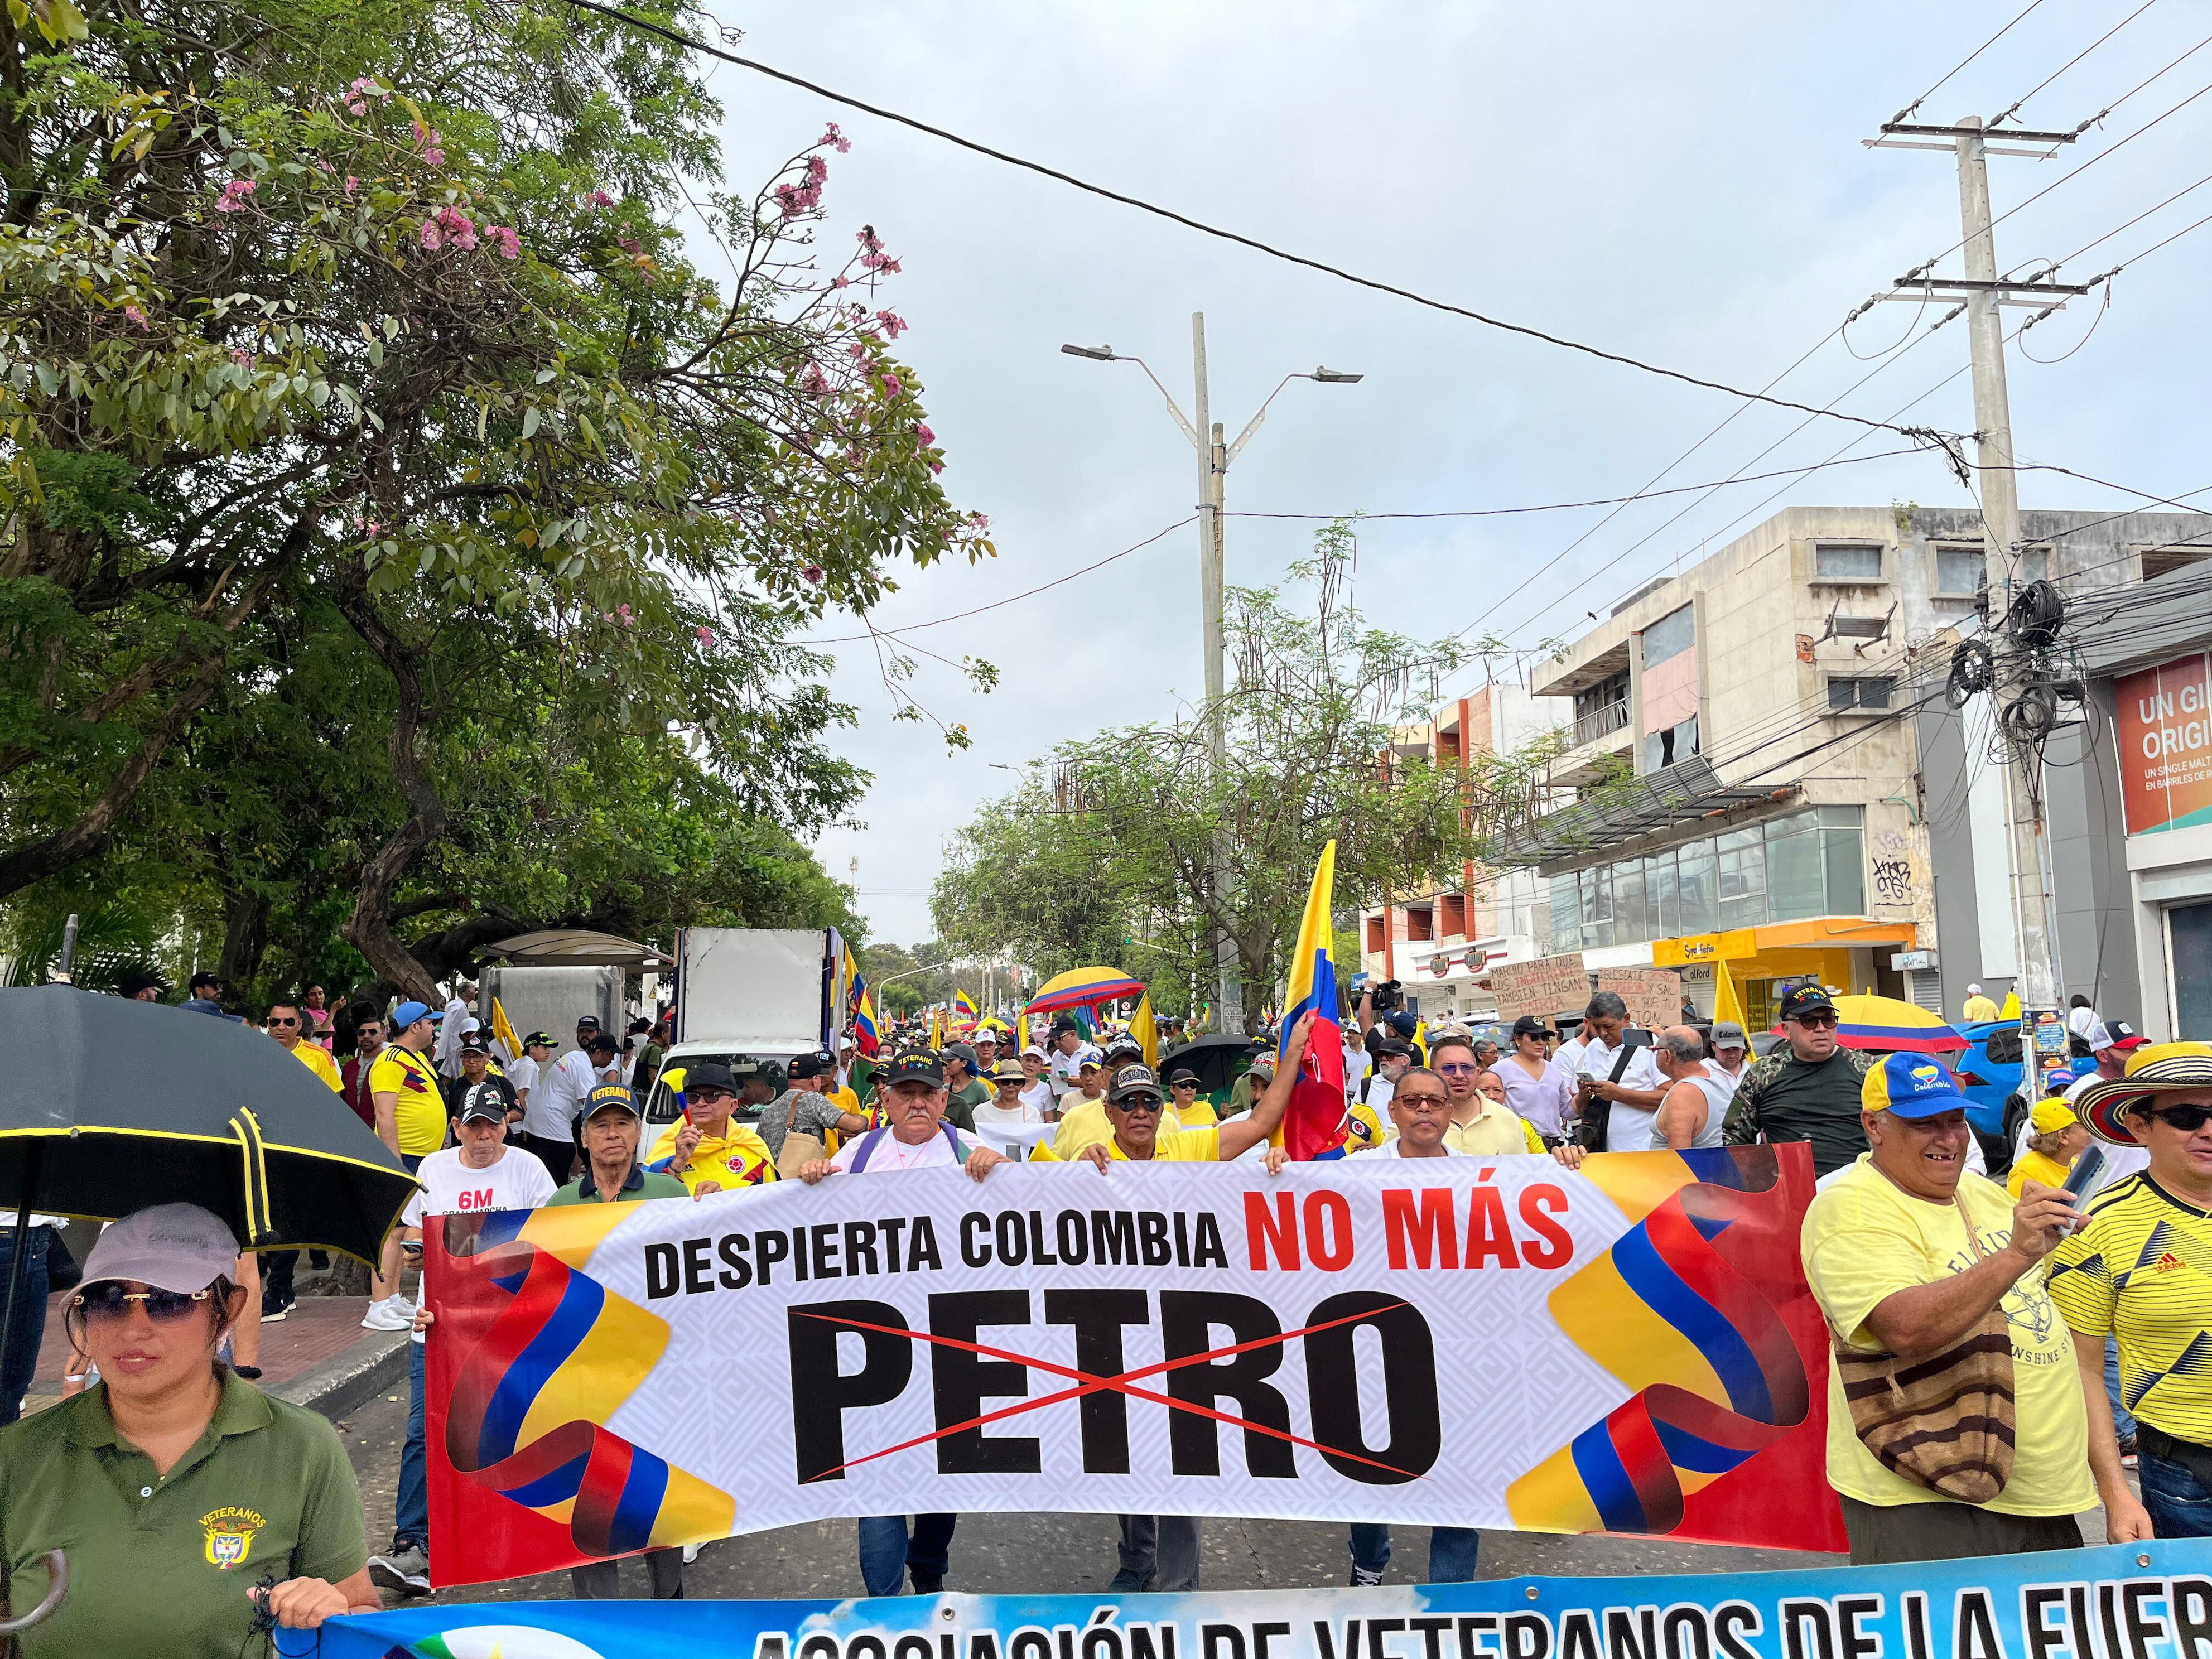 el “fuera petro” se toma la calles de madrid; colombianos protestan contra el gobierno frente a la embajada en españa